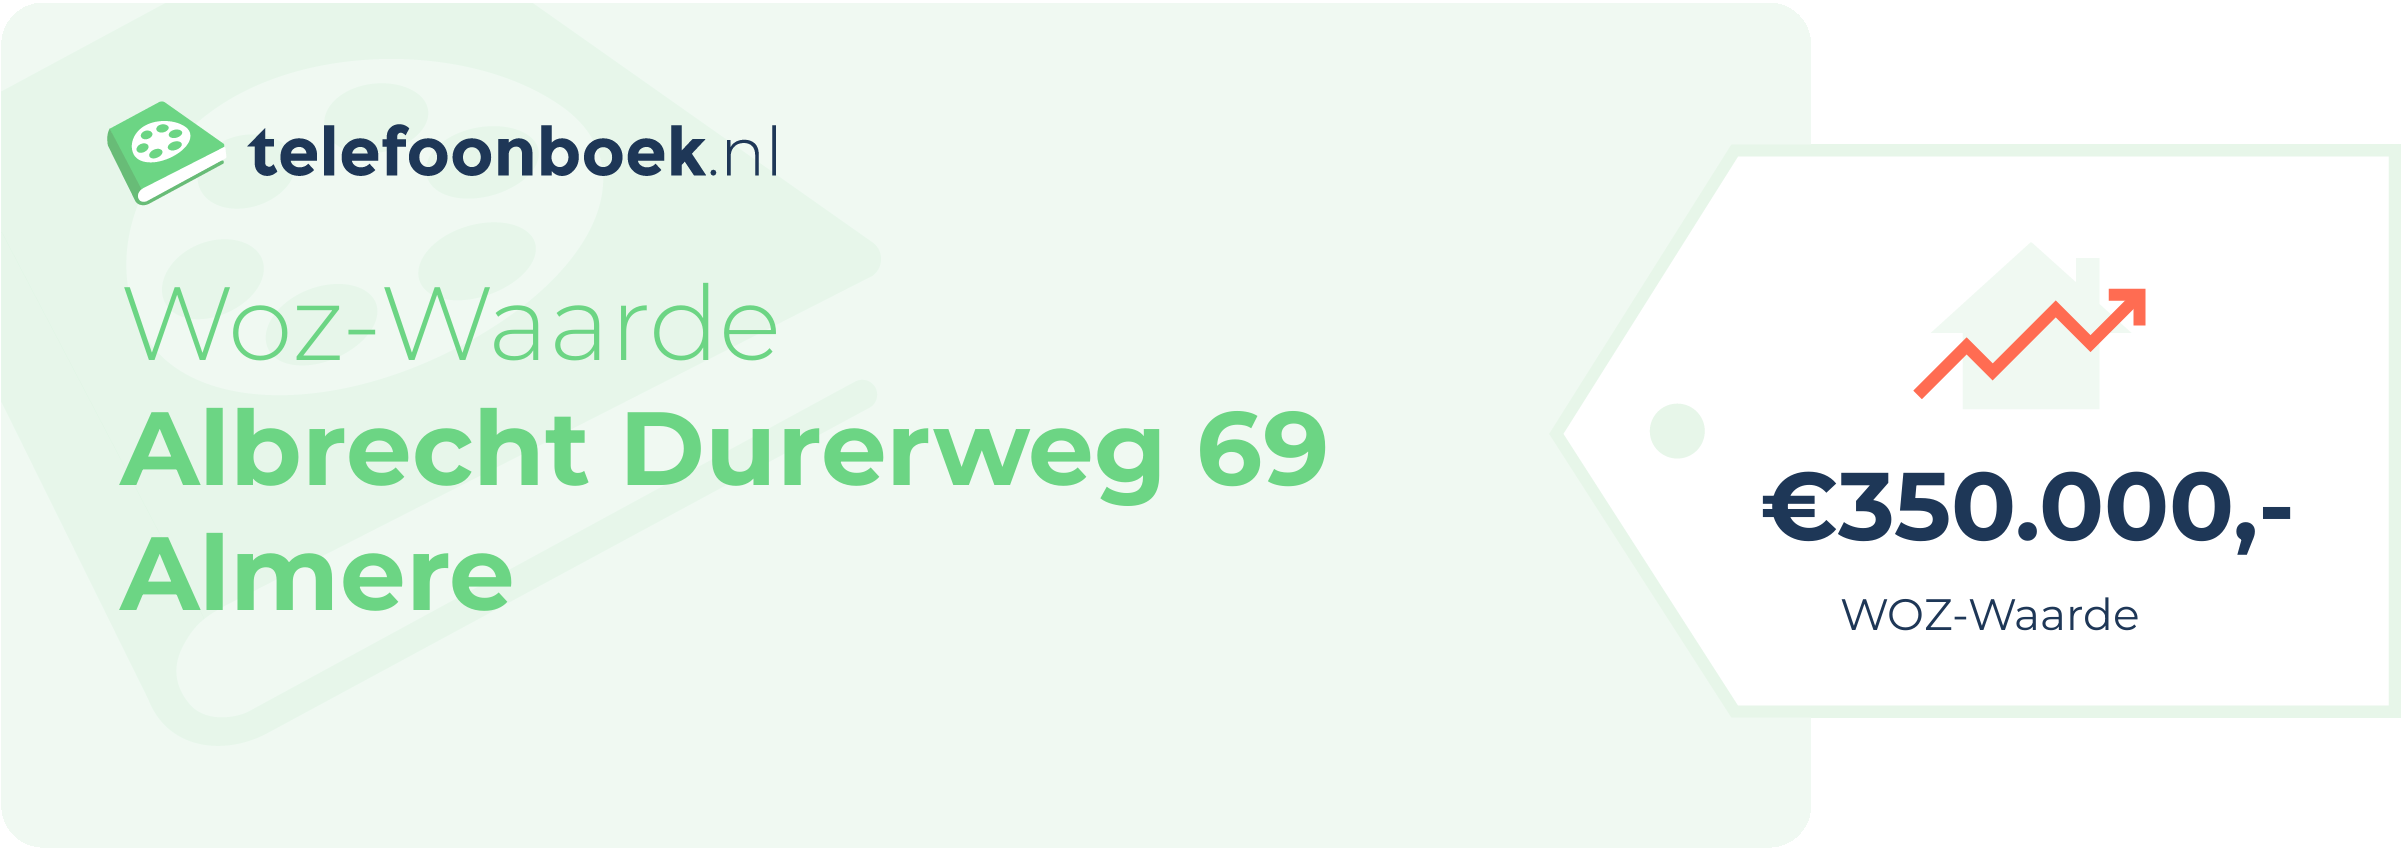 WOZ-waarde Albrecht Durerweg 69 Almere